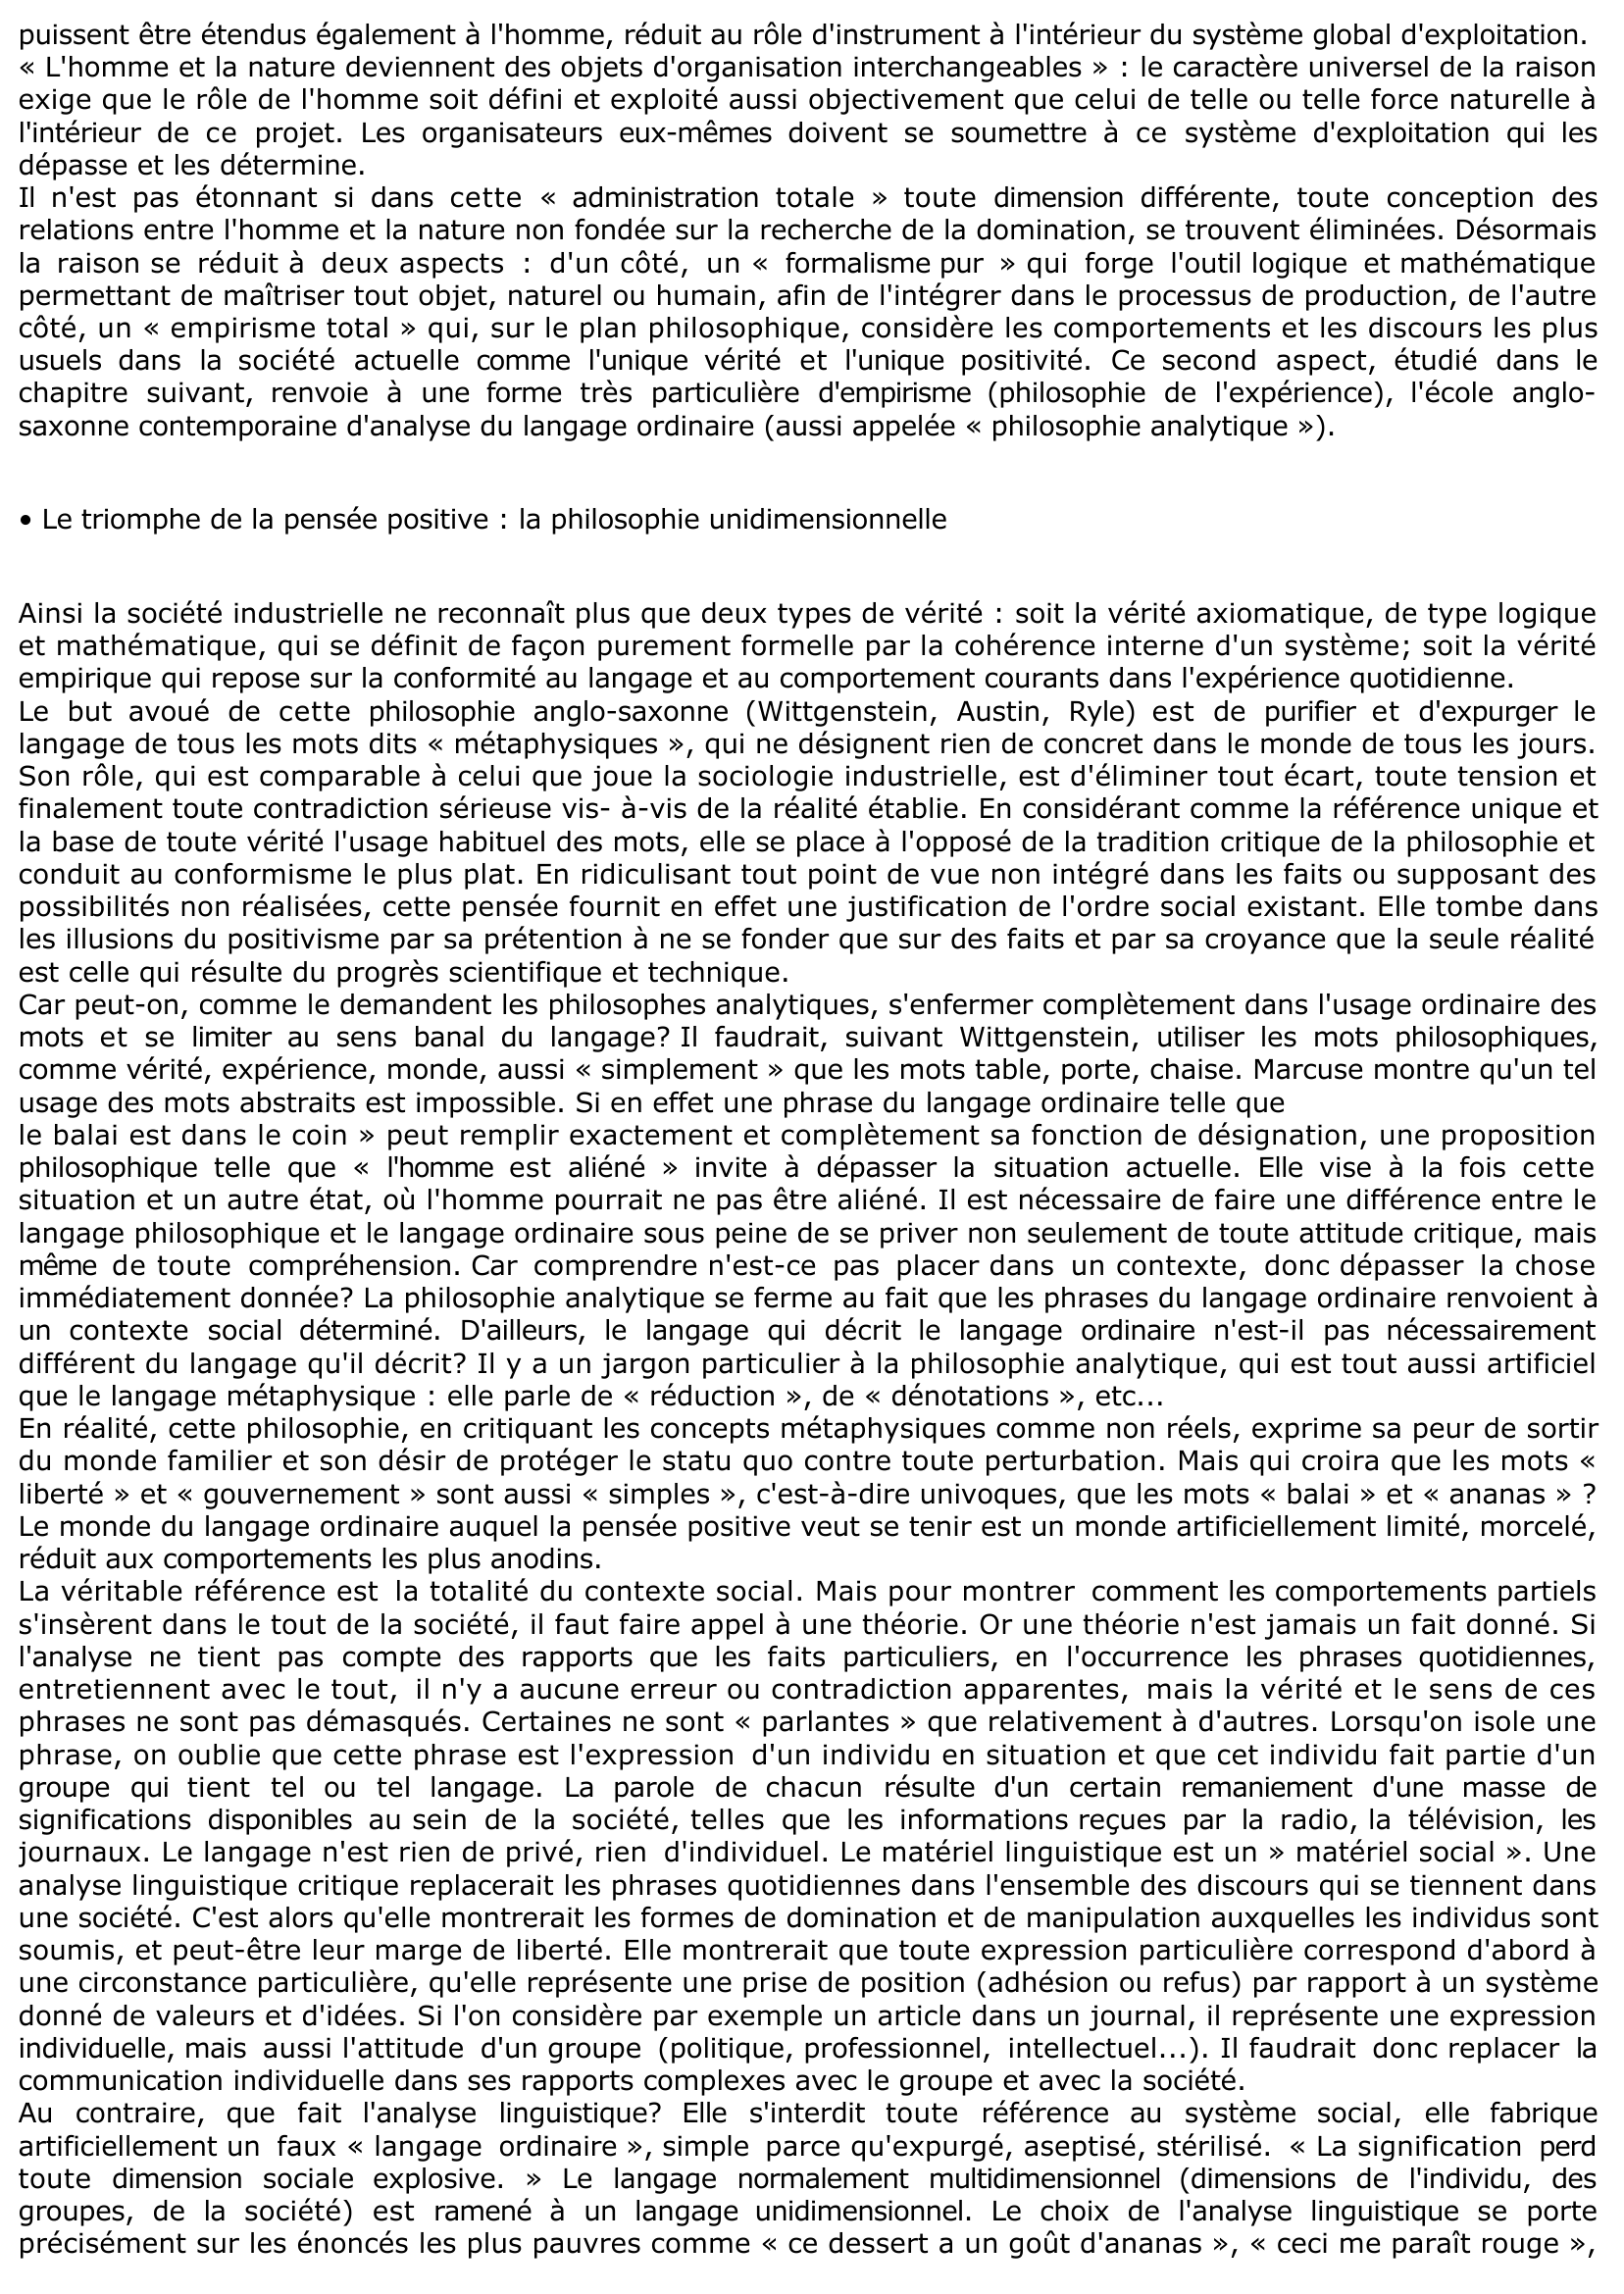 Prévisualisation du document ETUDE DE LA DEUXIÈME PARTIE: LA PENSÉE UNIDIMENSIONNELLE (Marcuse - L'homme unidimensionnel)